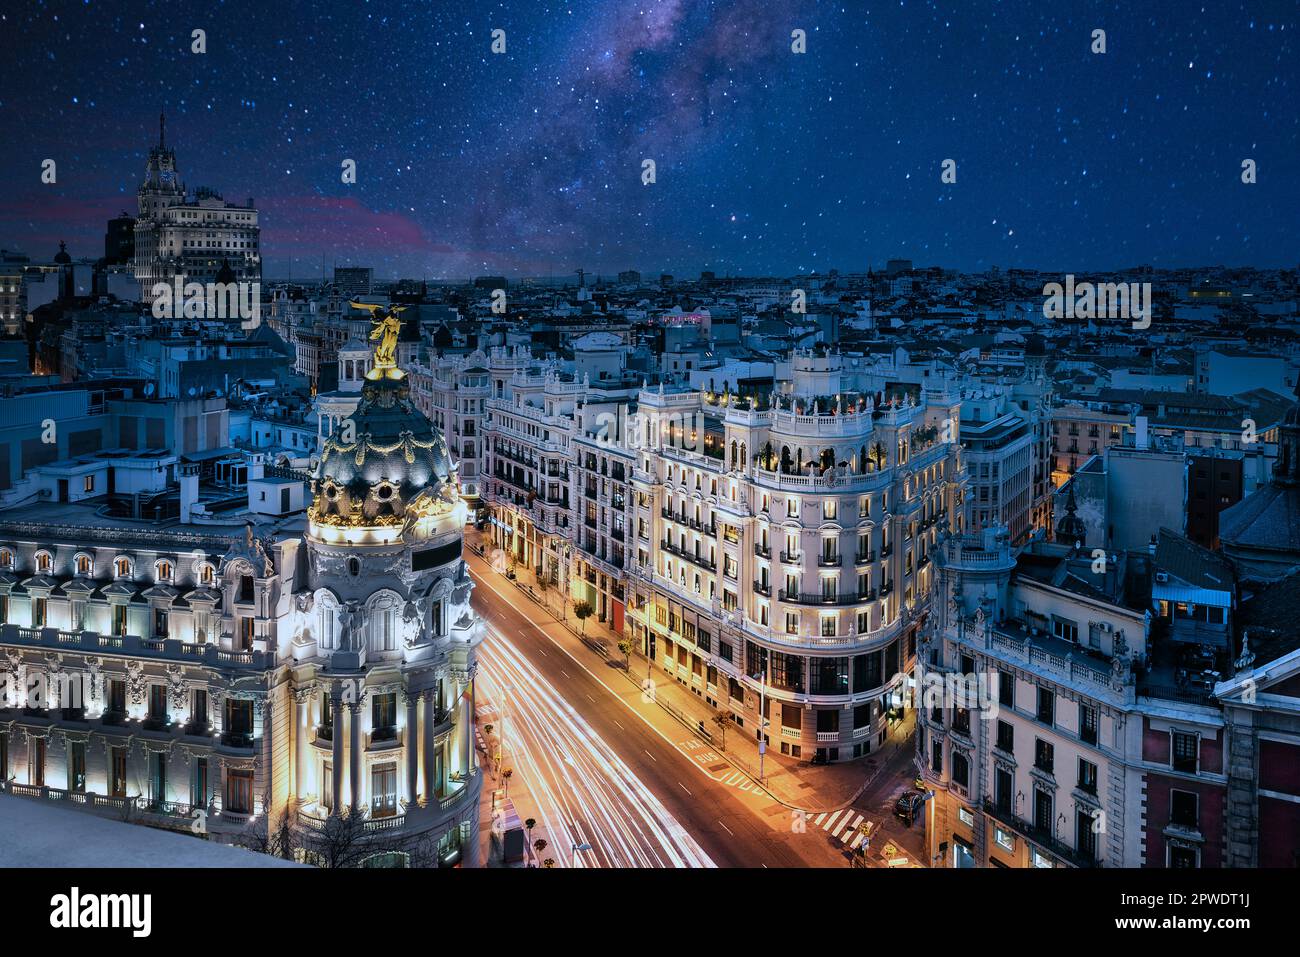 Strahlen der Ampel auf der Gran via Straße, der wichtigsten Einkaufsstraße in Madrid bei Nacht. Spanien, Europa. Stockfoto